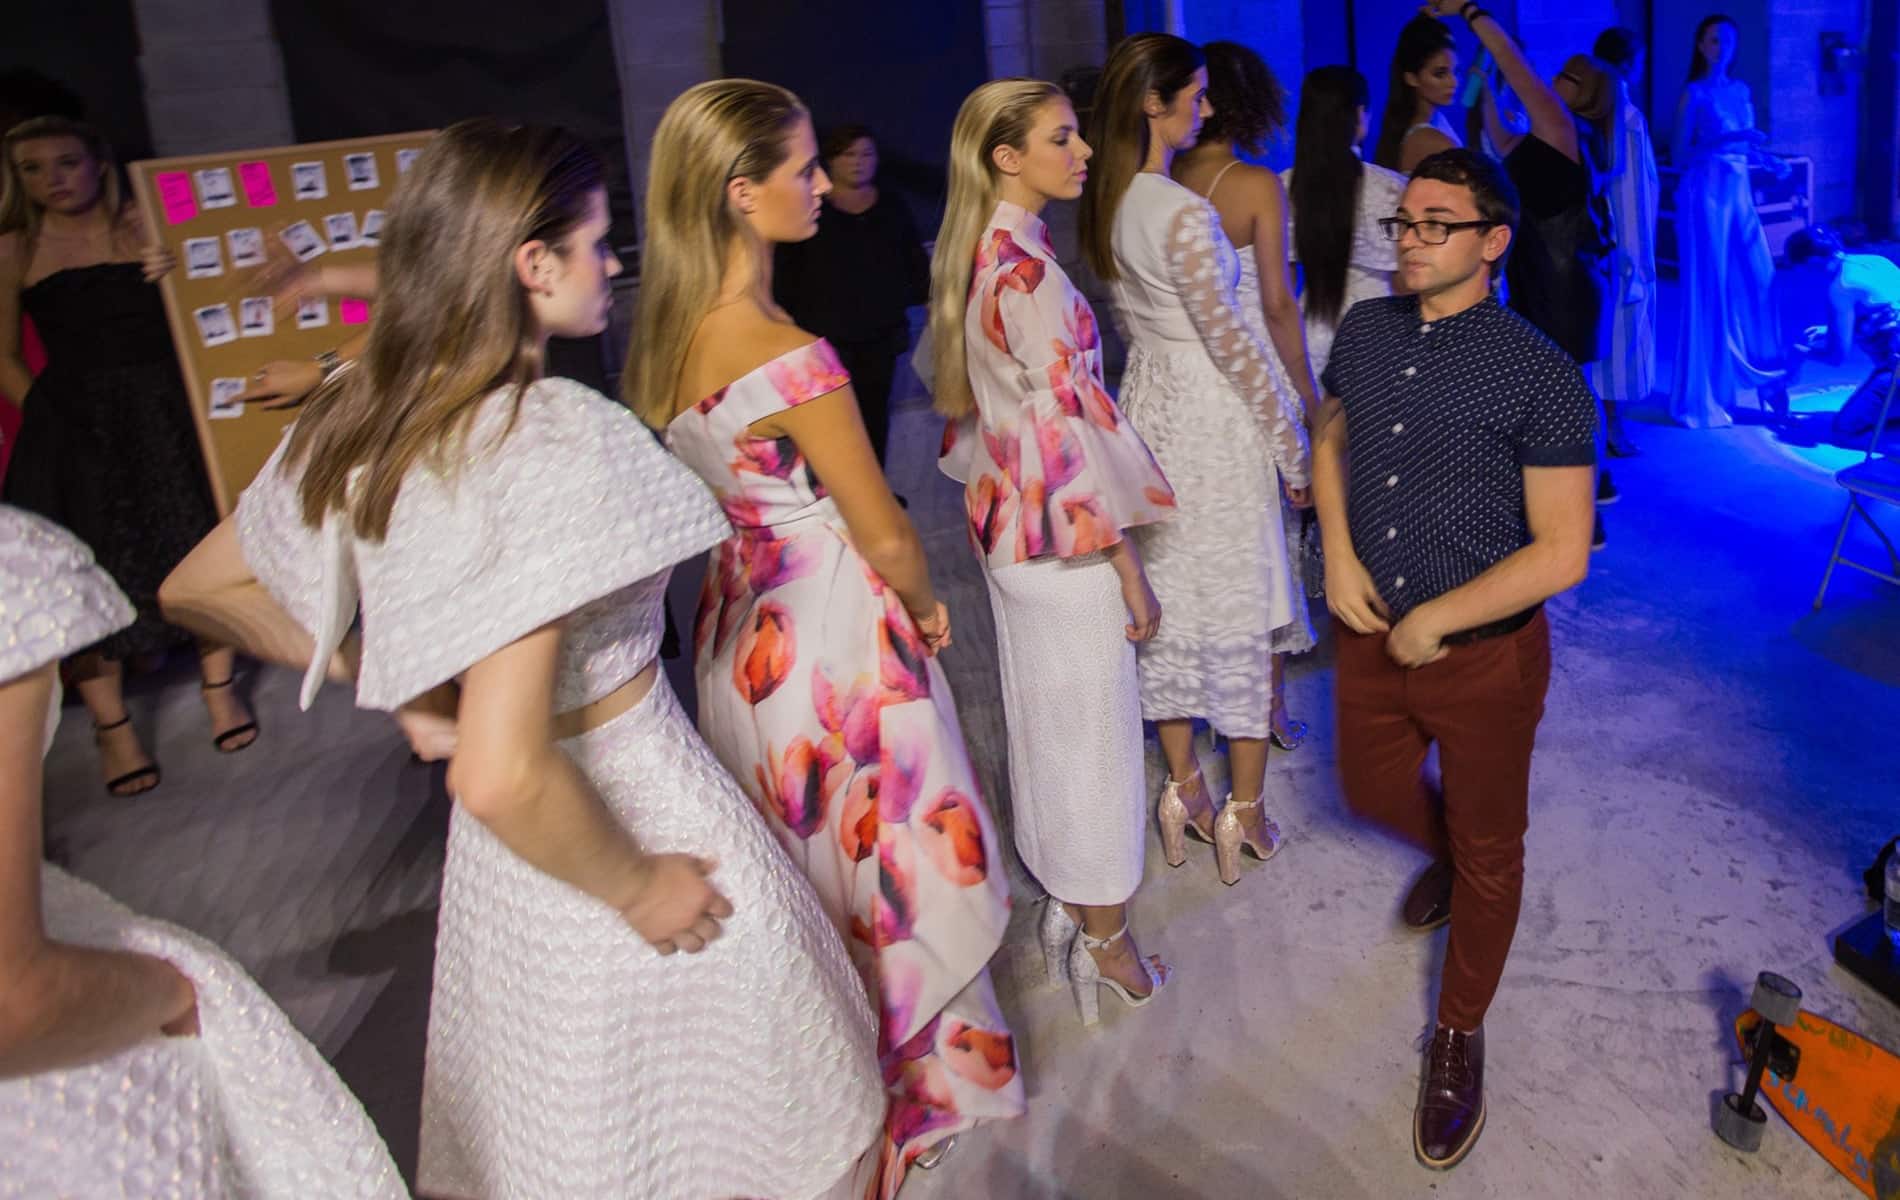 Christian Siriano and models backstage at South Walton Fashion Week 2016